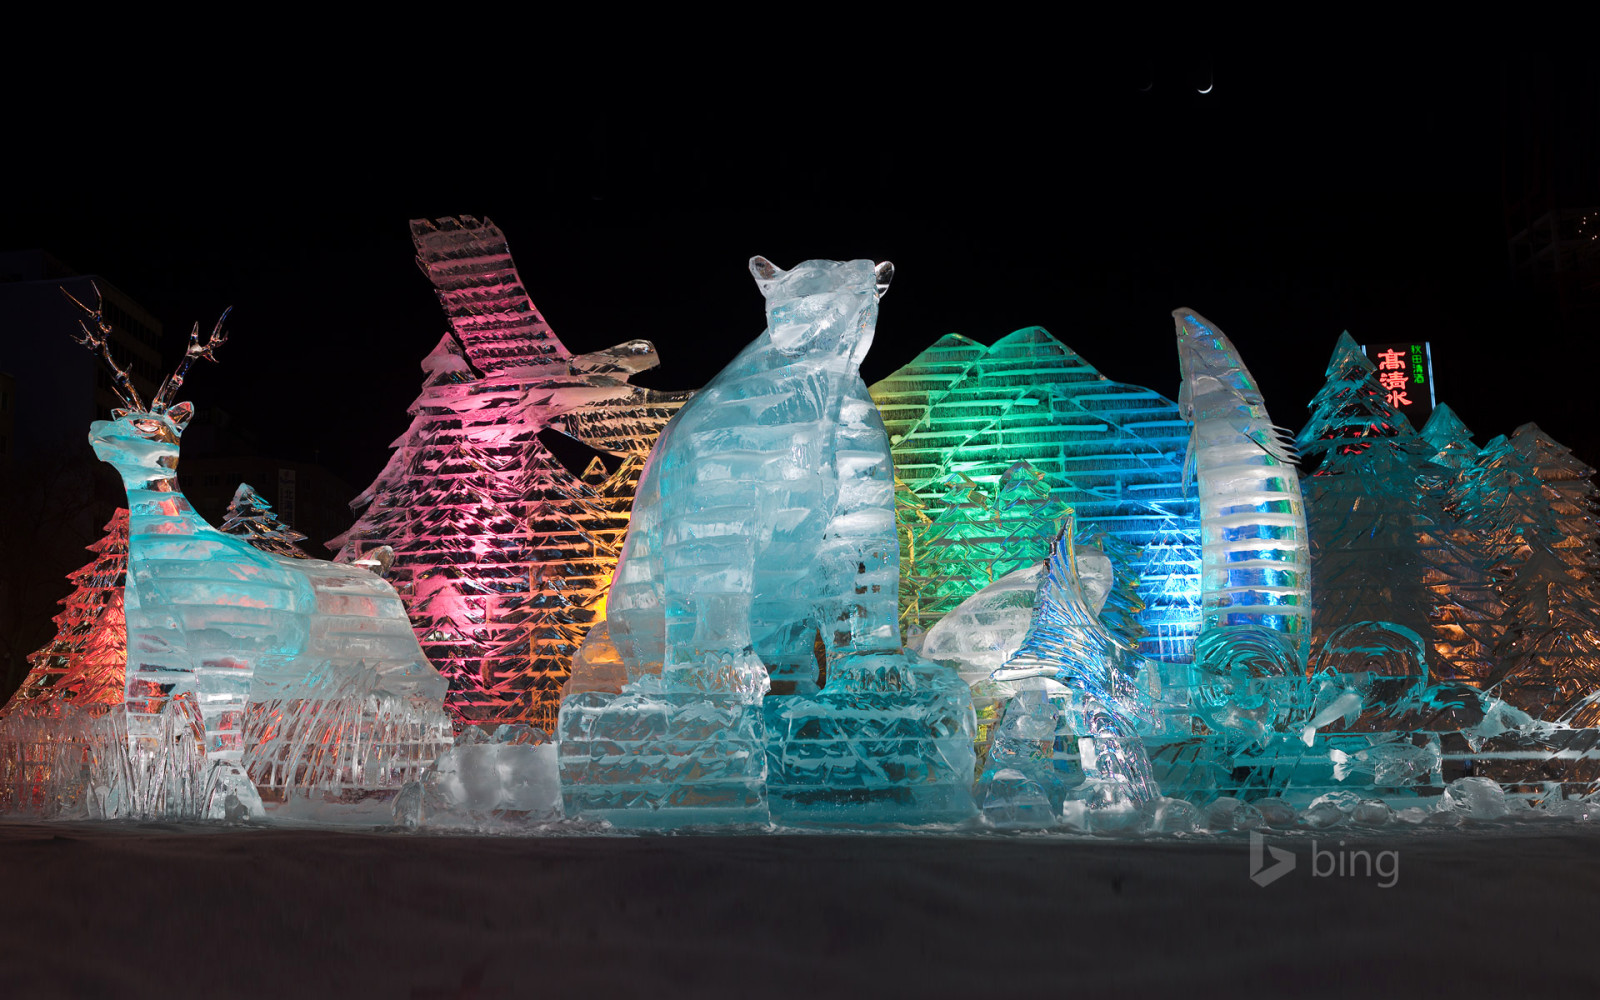 ánh sáng, đêm, Nhật Bản, màu sắc, Sapporo, Tác phẩm điêu khắc băng, Lễ hội mùa đông